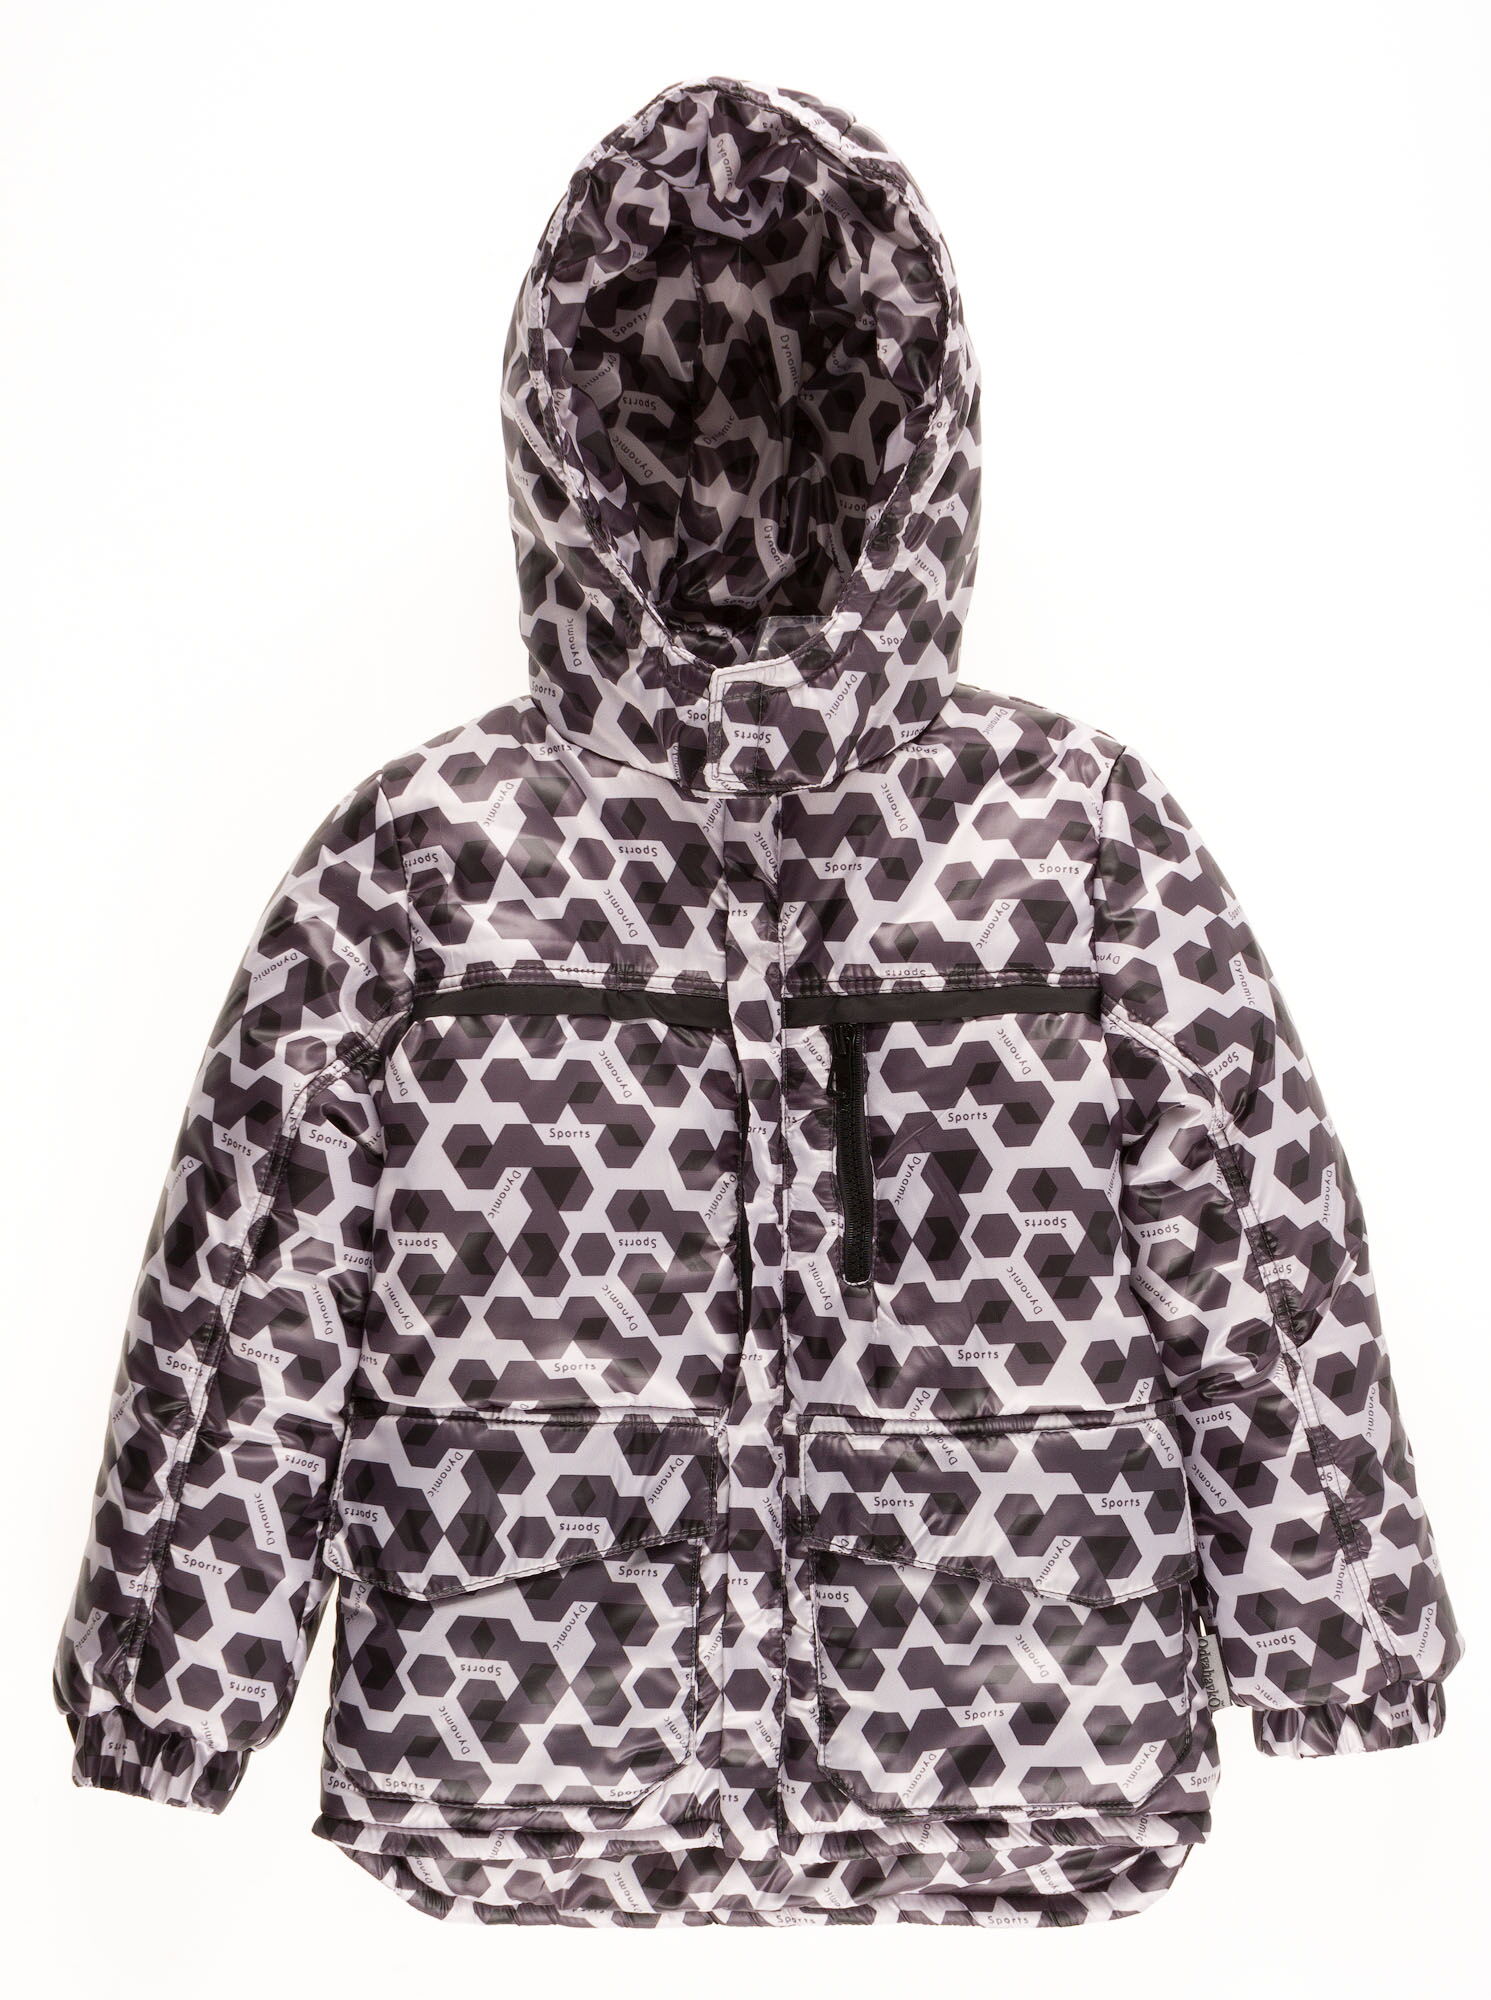 Комбинезон зимний раздельный для мальчика (куртка+штаны) Одягайко геометрия черный 20088+01241О - размеры